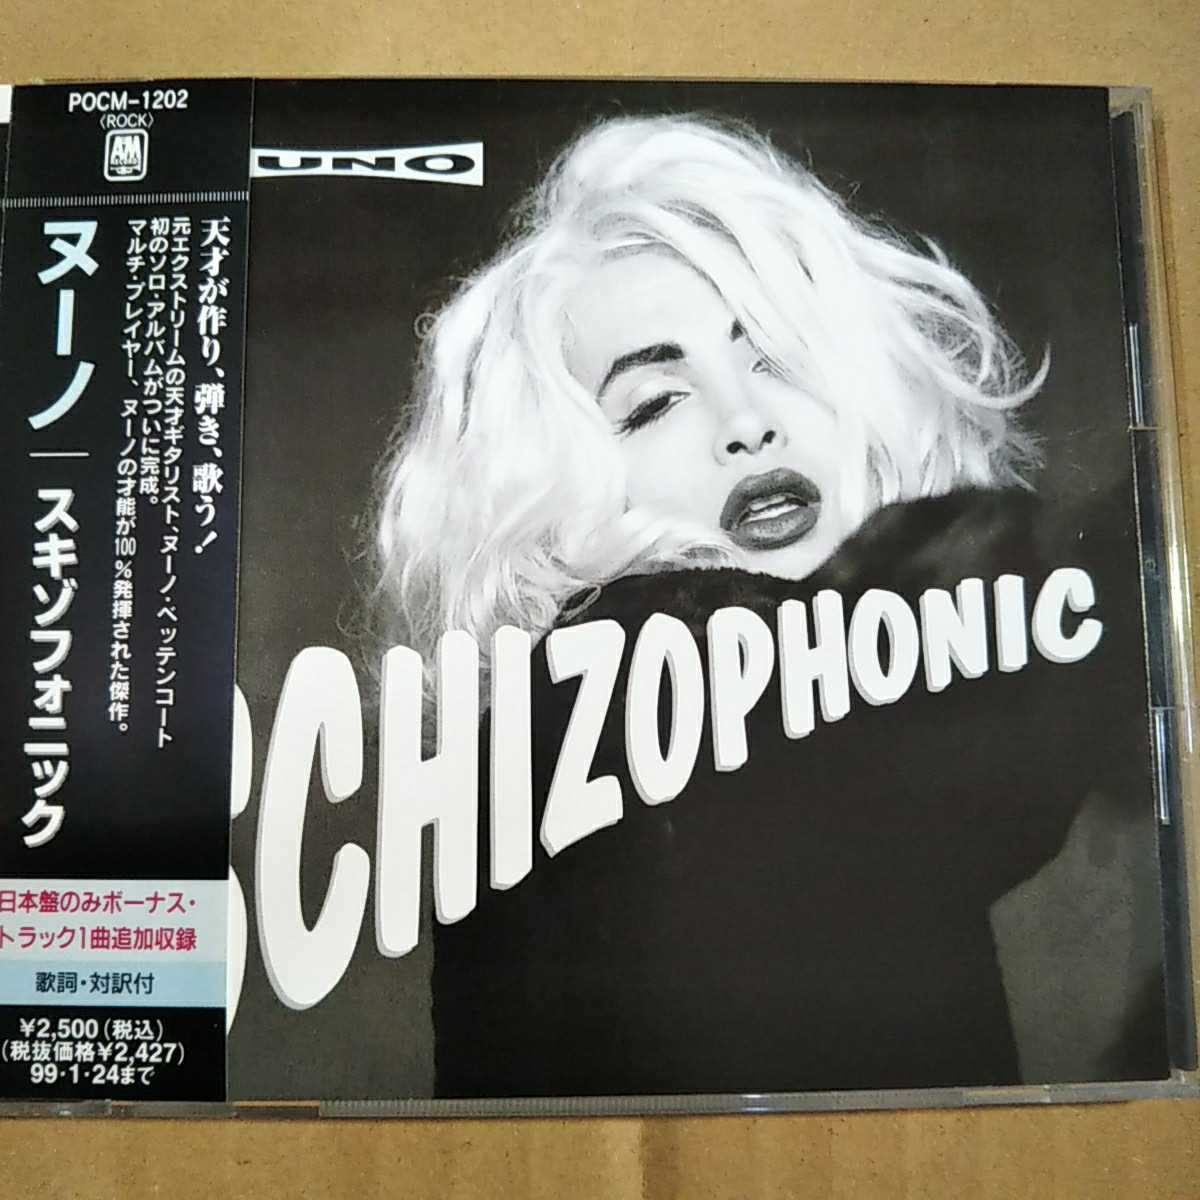 中古CD NUNO / ヌーノ『SCHIZOPHONIC』国内盤/帯有り/ヌーノ・ベッテンコート POCM-1202【1508】